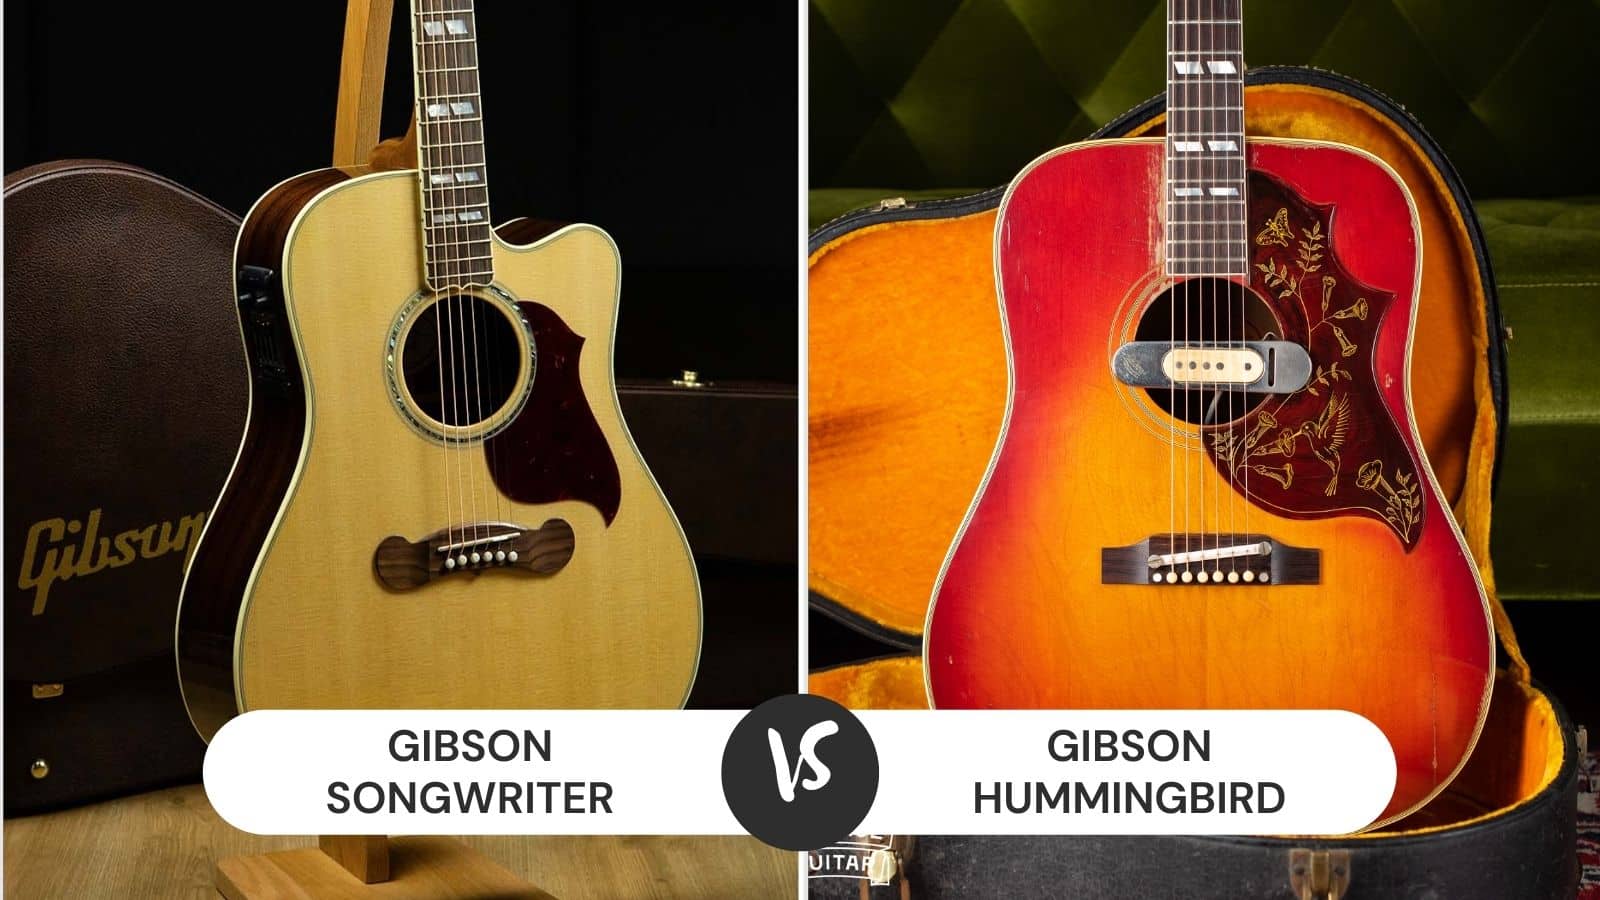 Gibson Songwriter vs Hummingbird